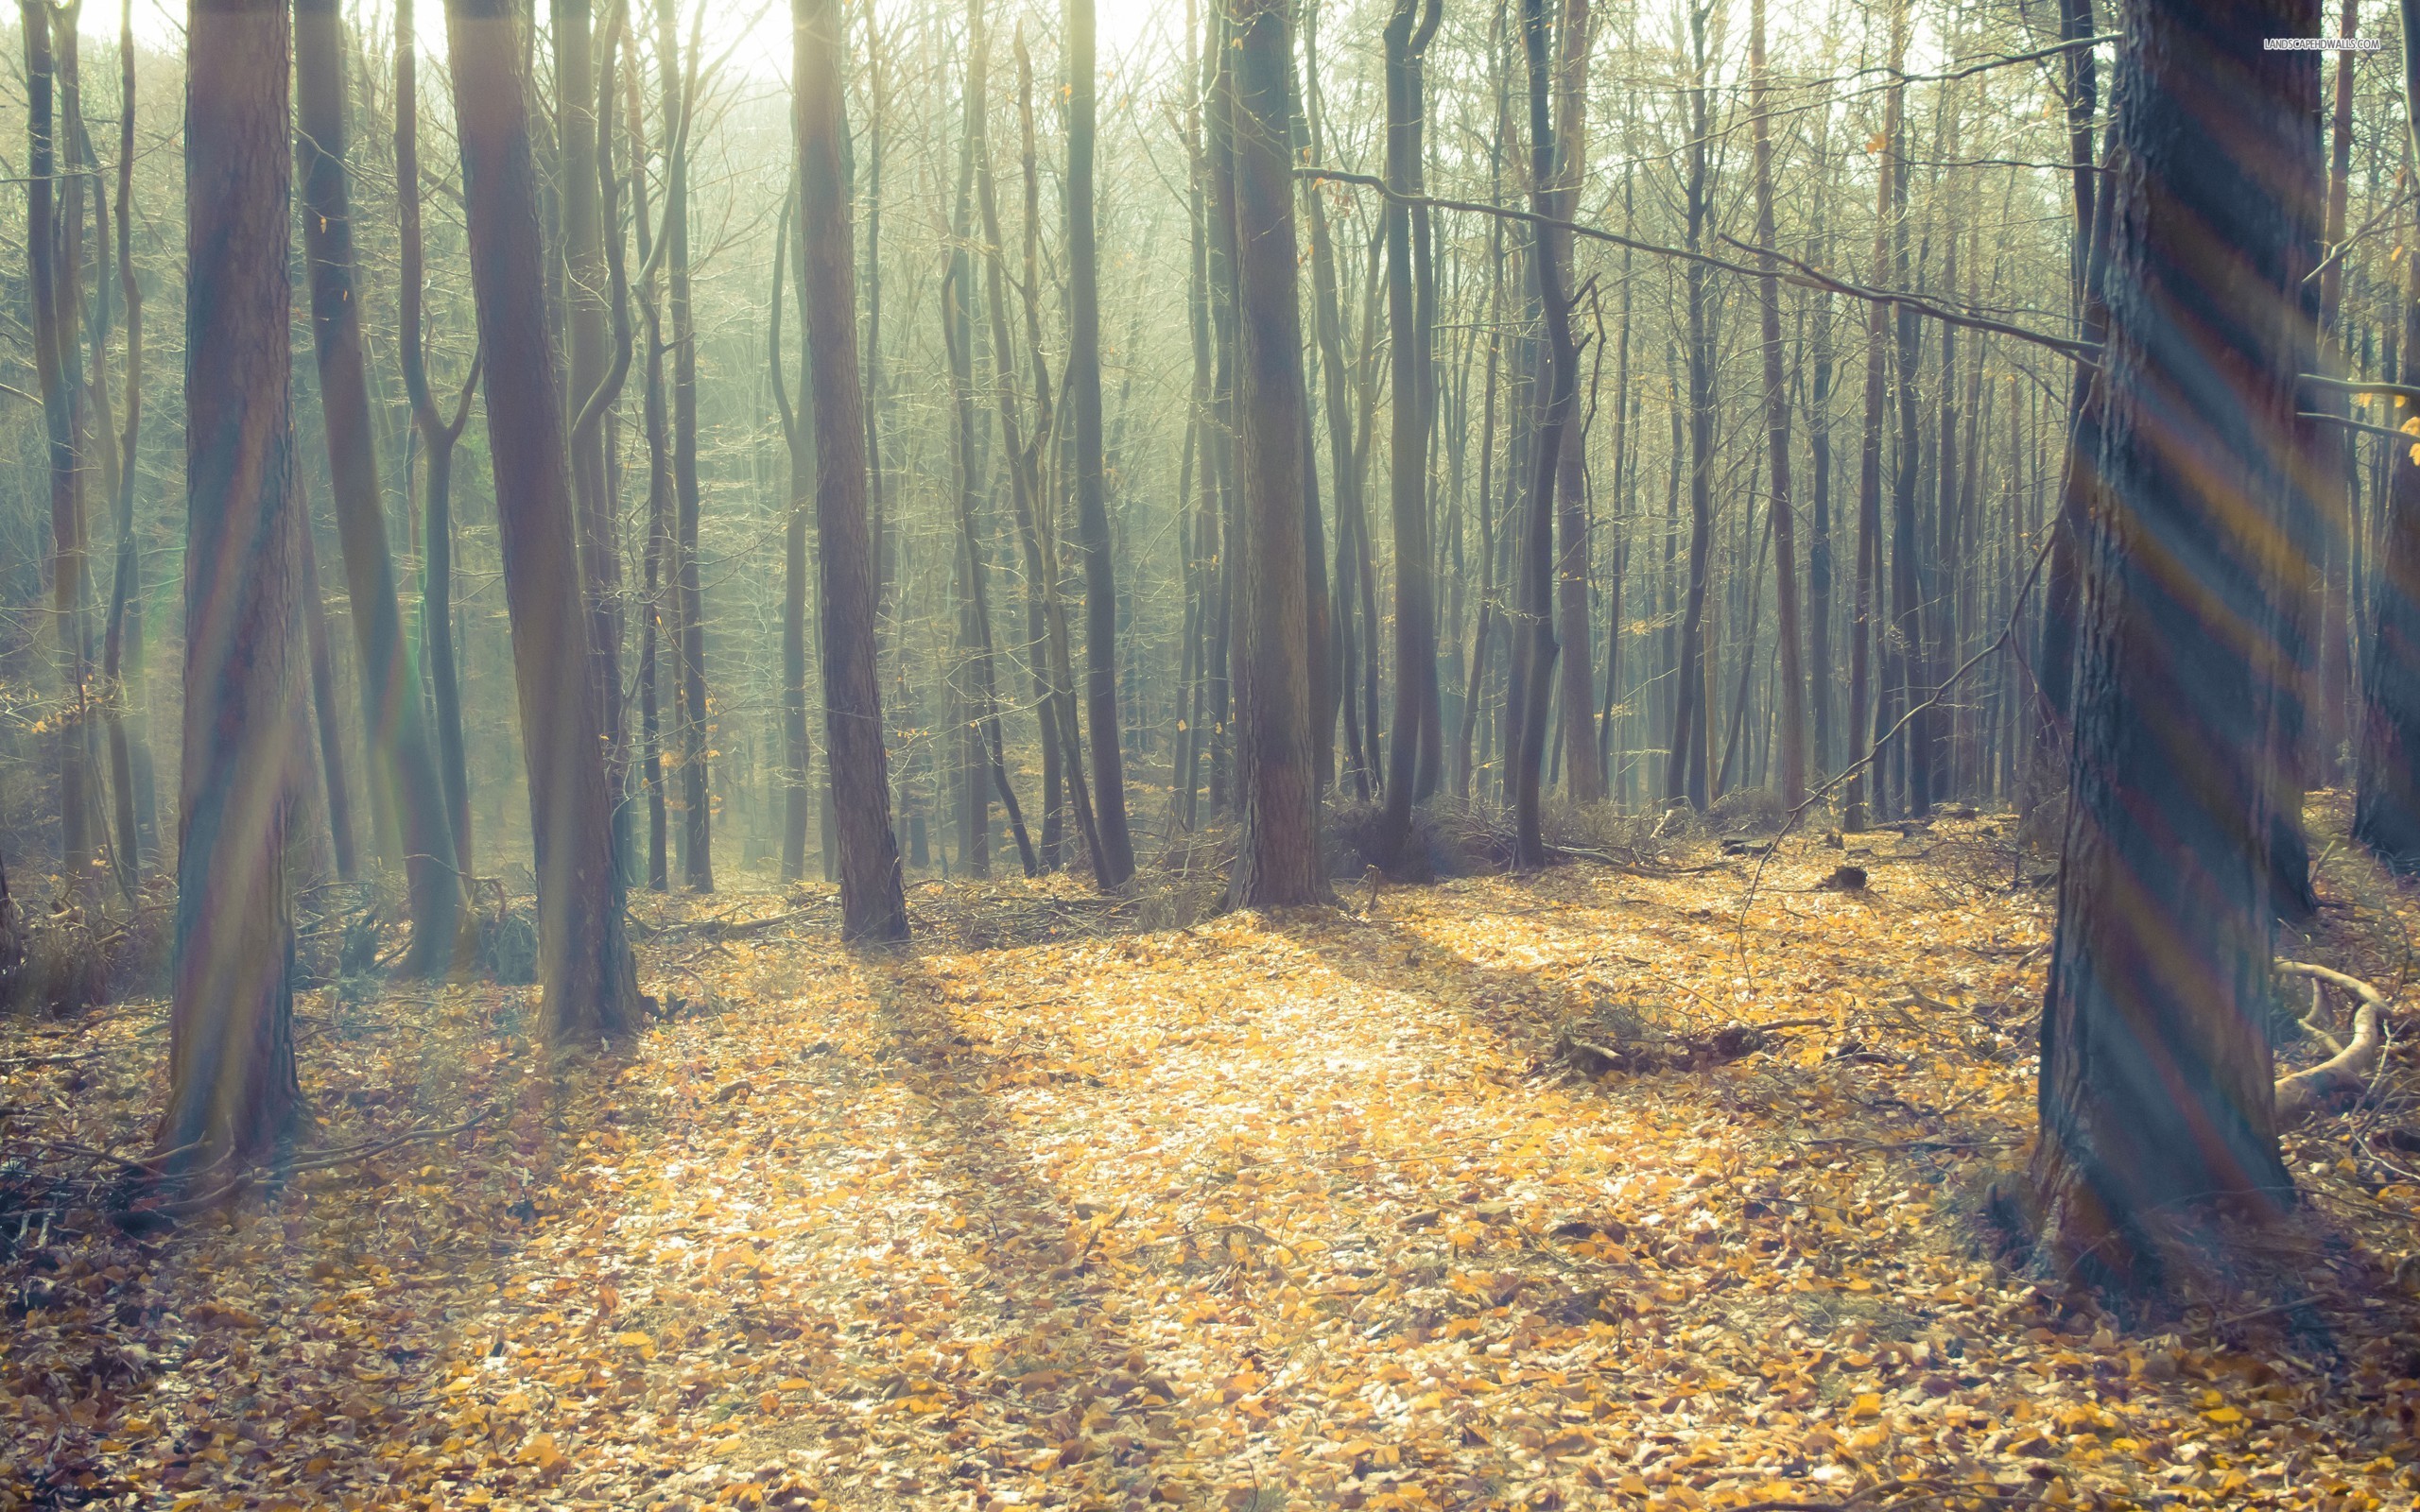 Hình nền rừng này sẽ mang đến cho bạn cảm giác thư giãn và bình yên khi mở khóa điện thoại vào mỗi buổi sáng. Hãy cùng thử và cảm nhận tình yêu thiên nhiên tràn đầy trong mỗi byte thông tin.